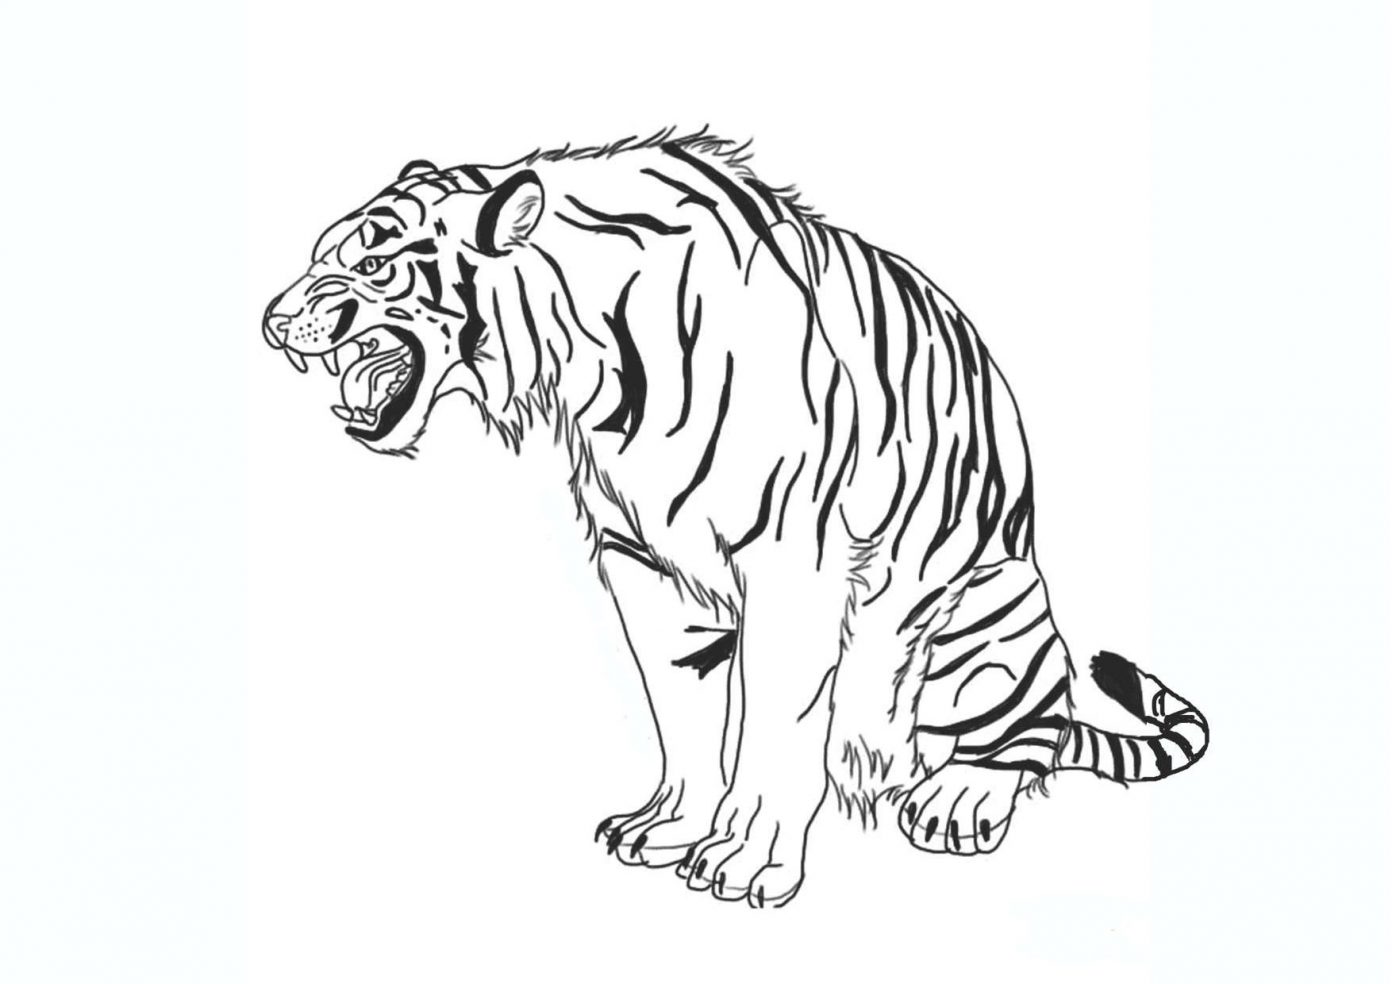 Xem hơn 100 ảnh về hình vẽ hổ bằng bút chì  daotaonec